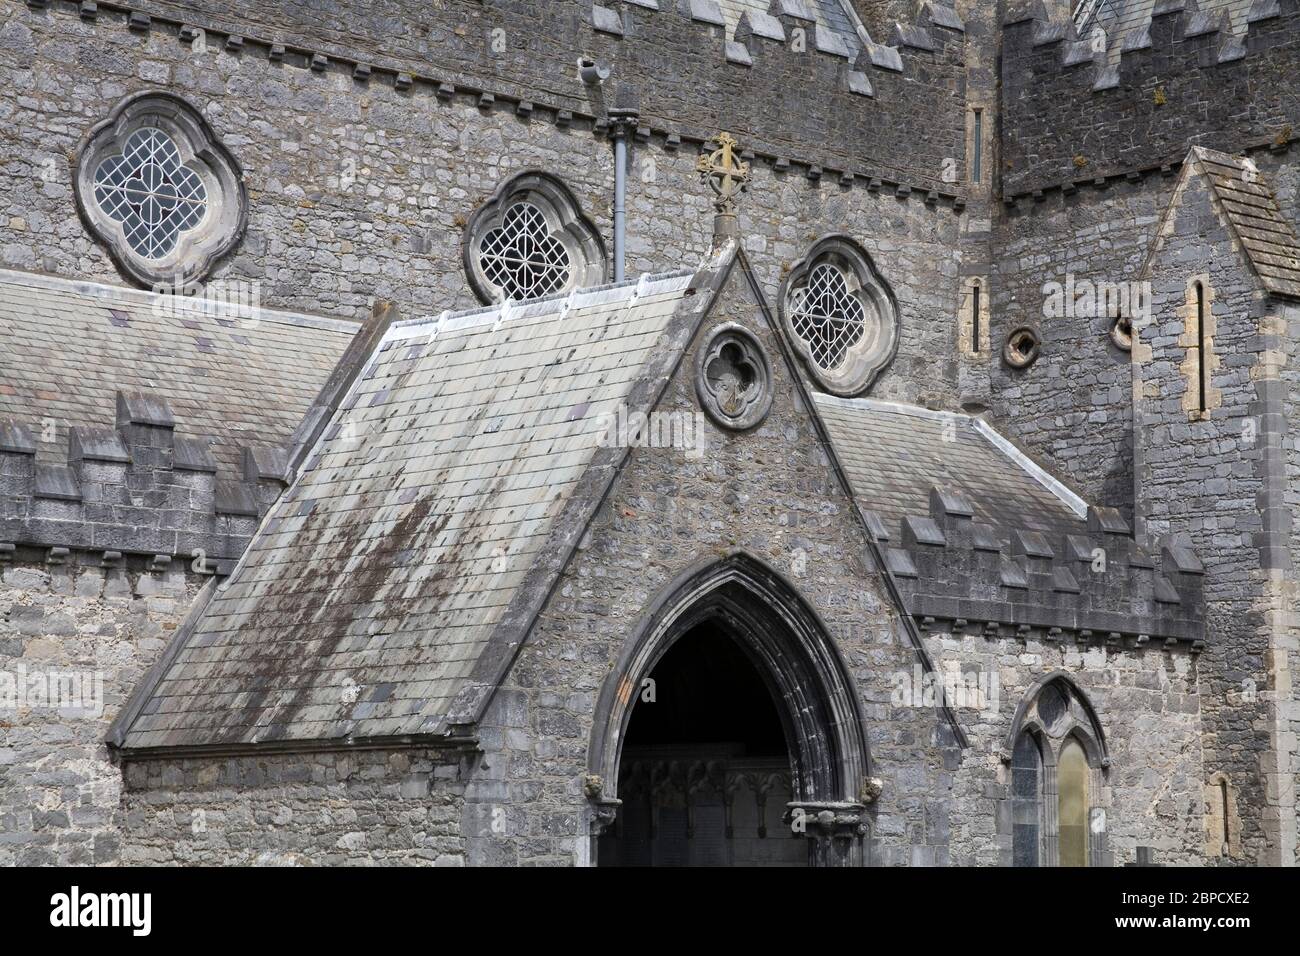 St. Canice's Cathedral, Kilkenny City, County Kilkenny, Ireland Stock Photo